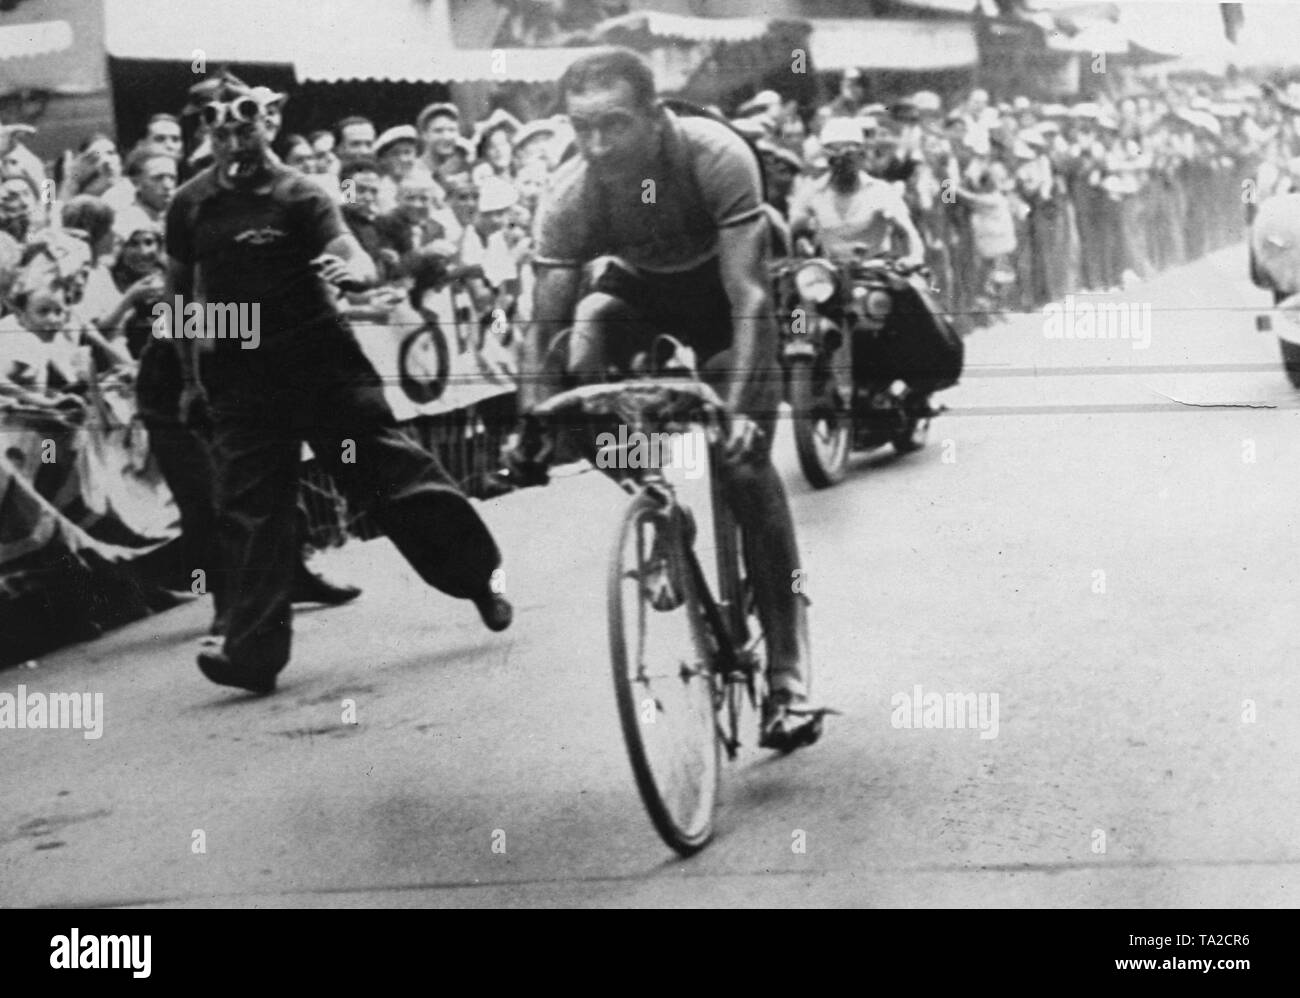 Französische Radfahrer Roger Lapebie auf der 9. Etappe der Tour de France 1937 in Digne-les-Bains. Er gewann diese Phase und die Tour de France. Ein Zuschauer läuft neben dem Radfahrer. Stockfoto